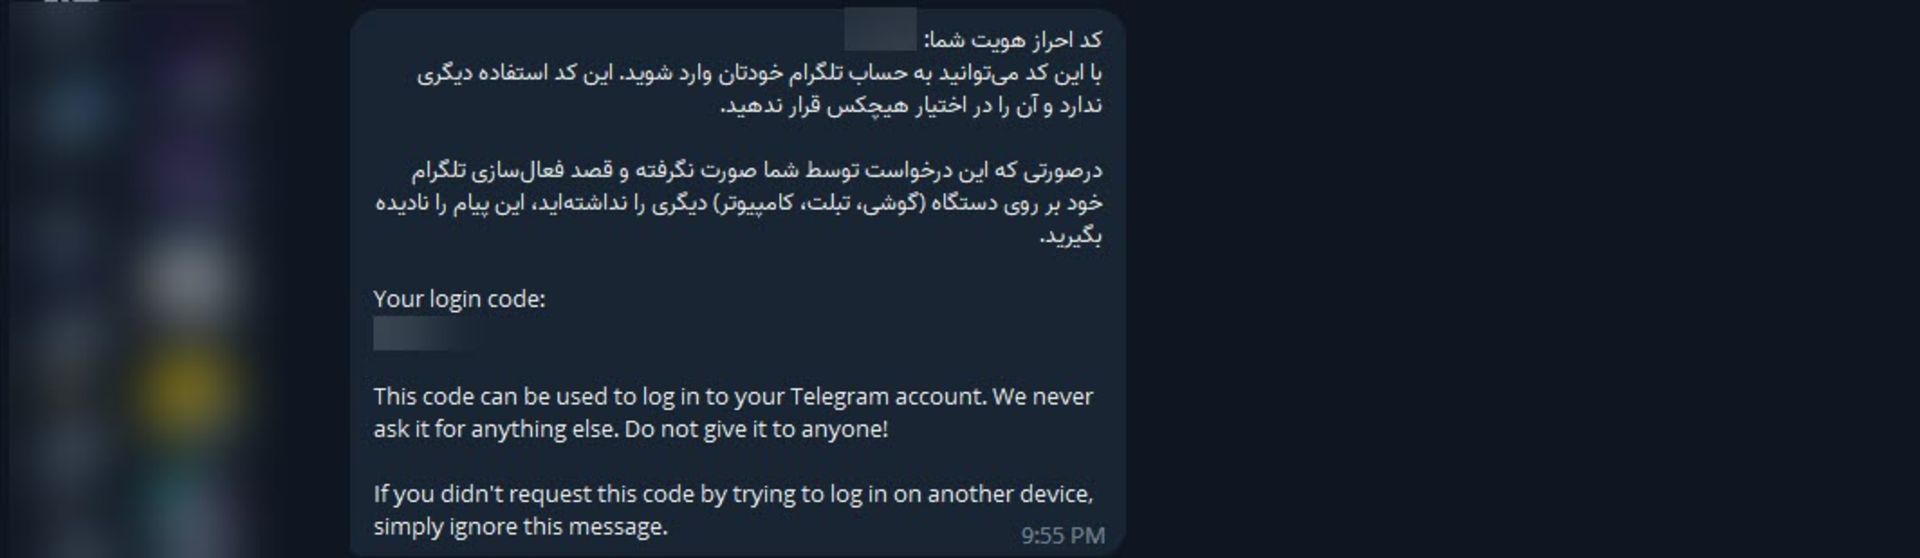 مرجع متخصصين ايران پيام كد تأييد تلگرام